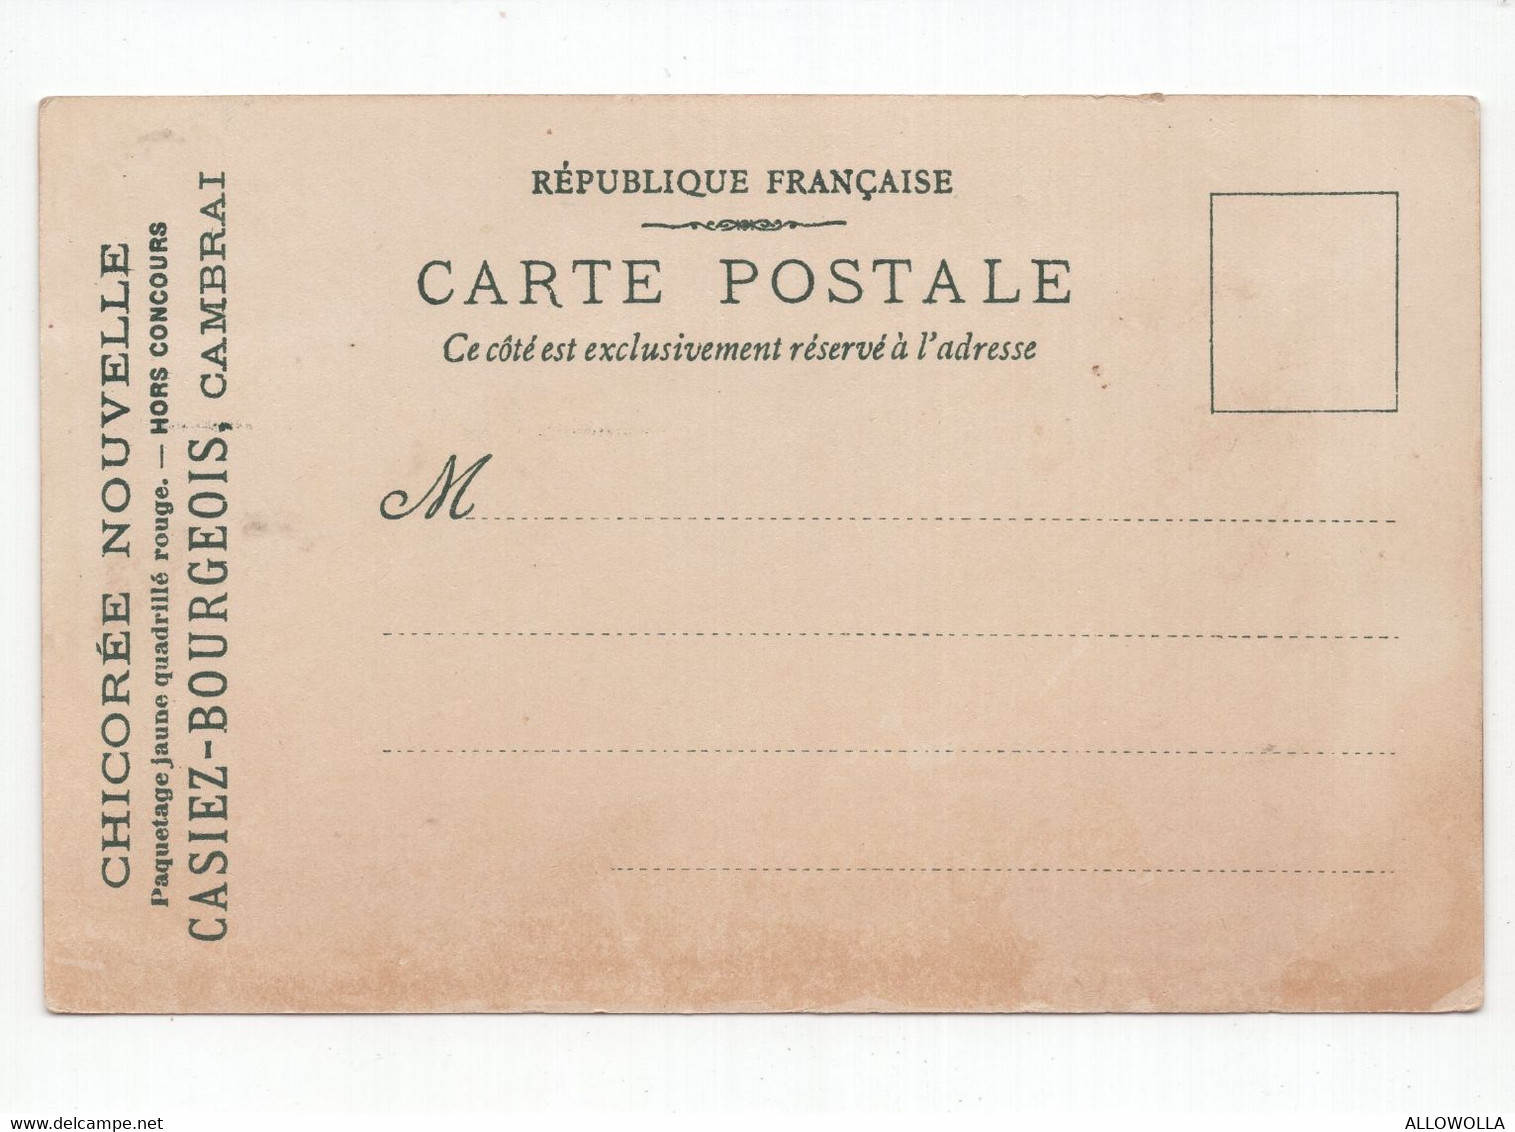 18806 " EXPOSITION UNIVERSELLE DE PARIS-1900-PERSPECTIVE DES QUAIS - CHILI "CART POST. NON SPED - Ausstellungen